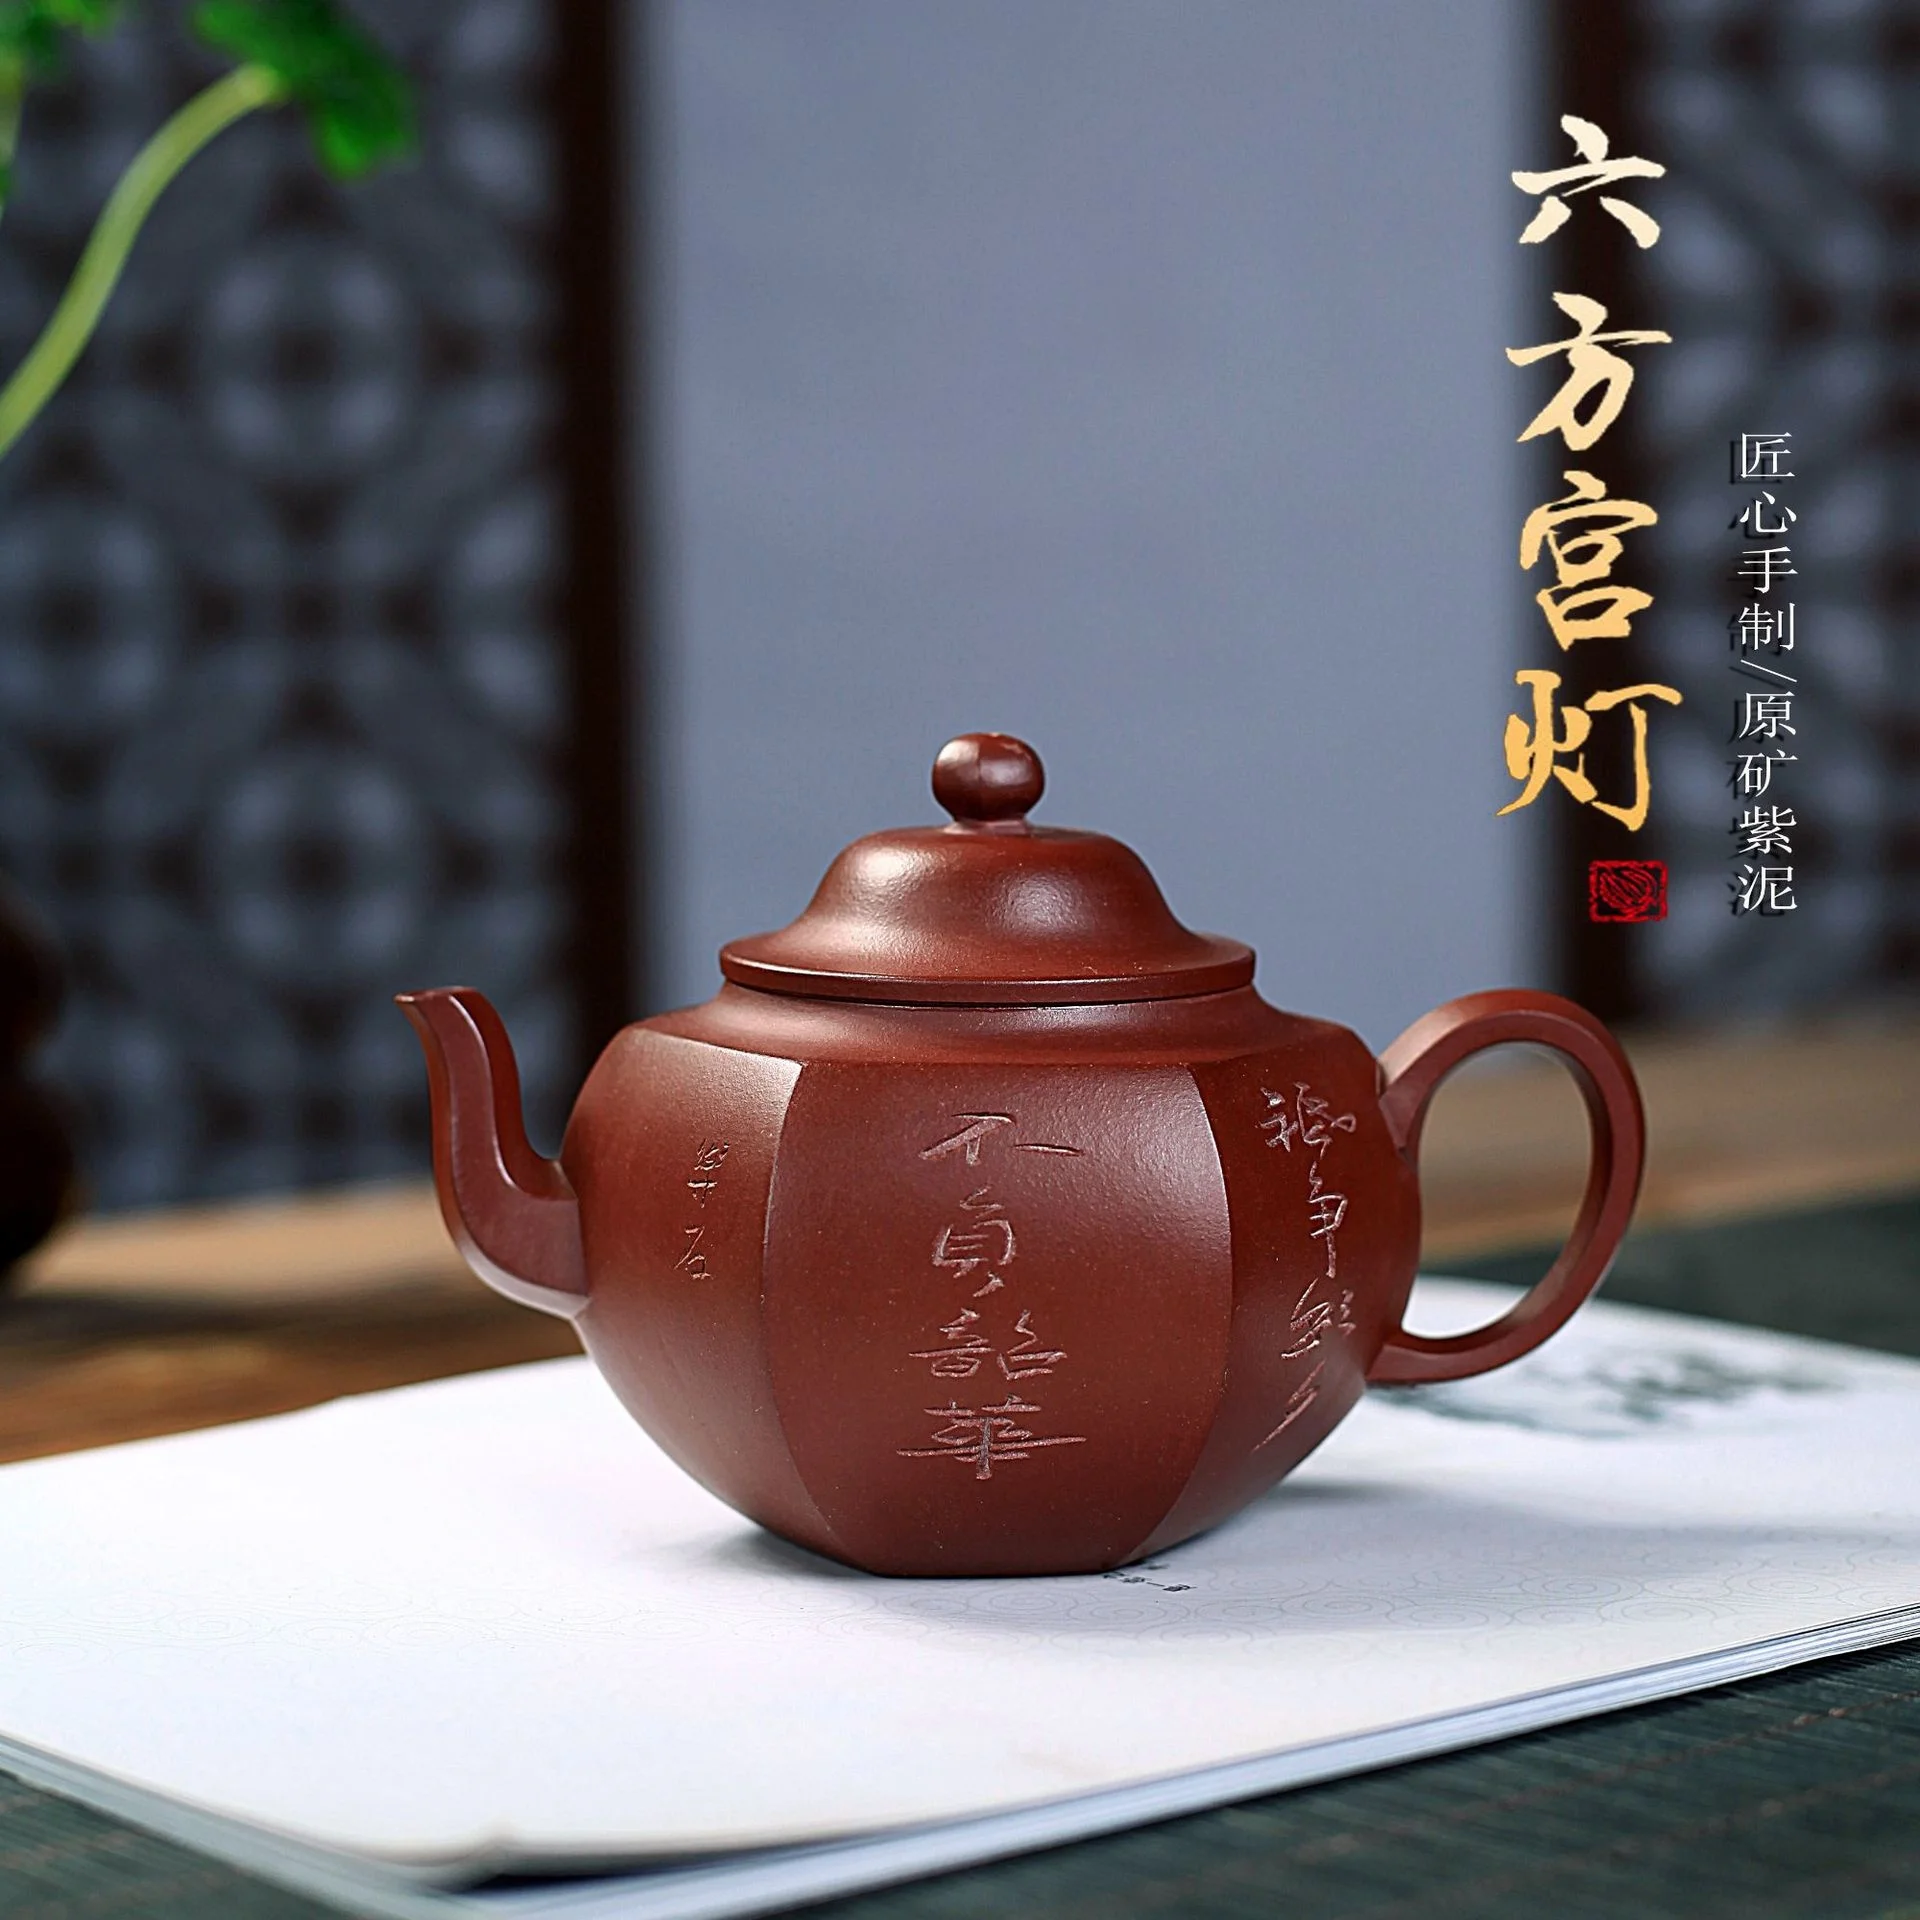 

Глиняный Чайник Yixing из фиолетовой глины, чистый ручной чайник из сырой руды, фиолетовая грязь, шестигранный дворцовый фонарик, известный ча...